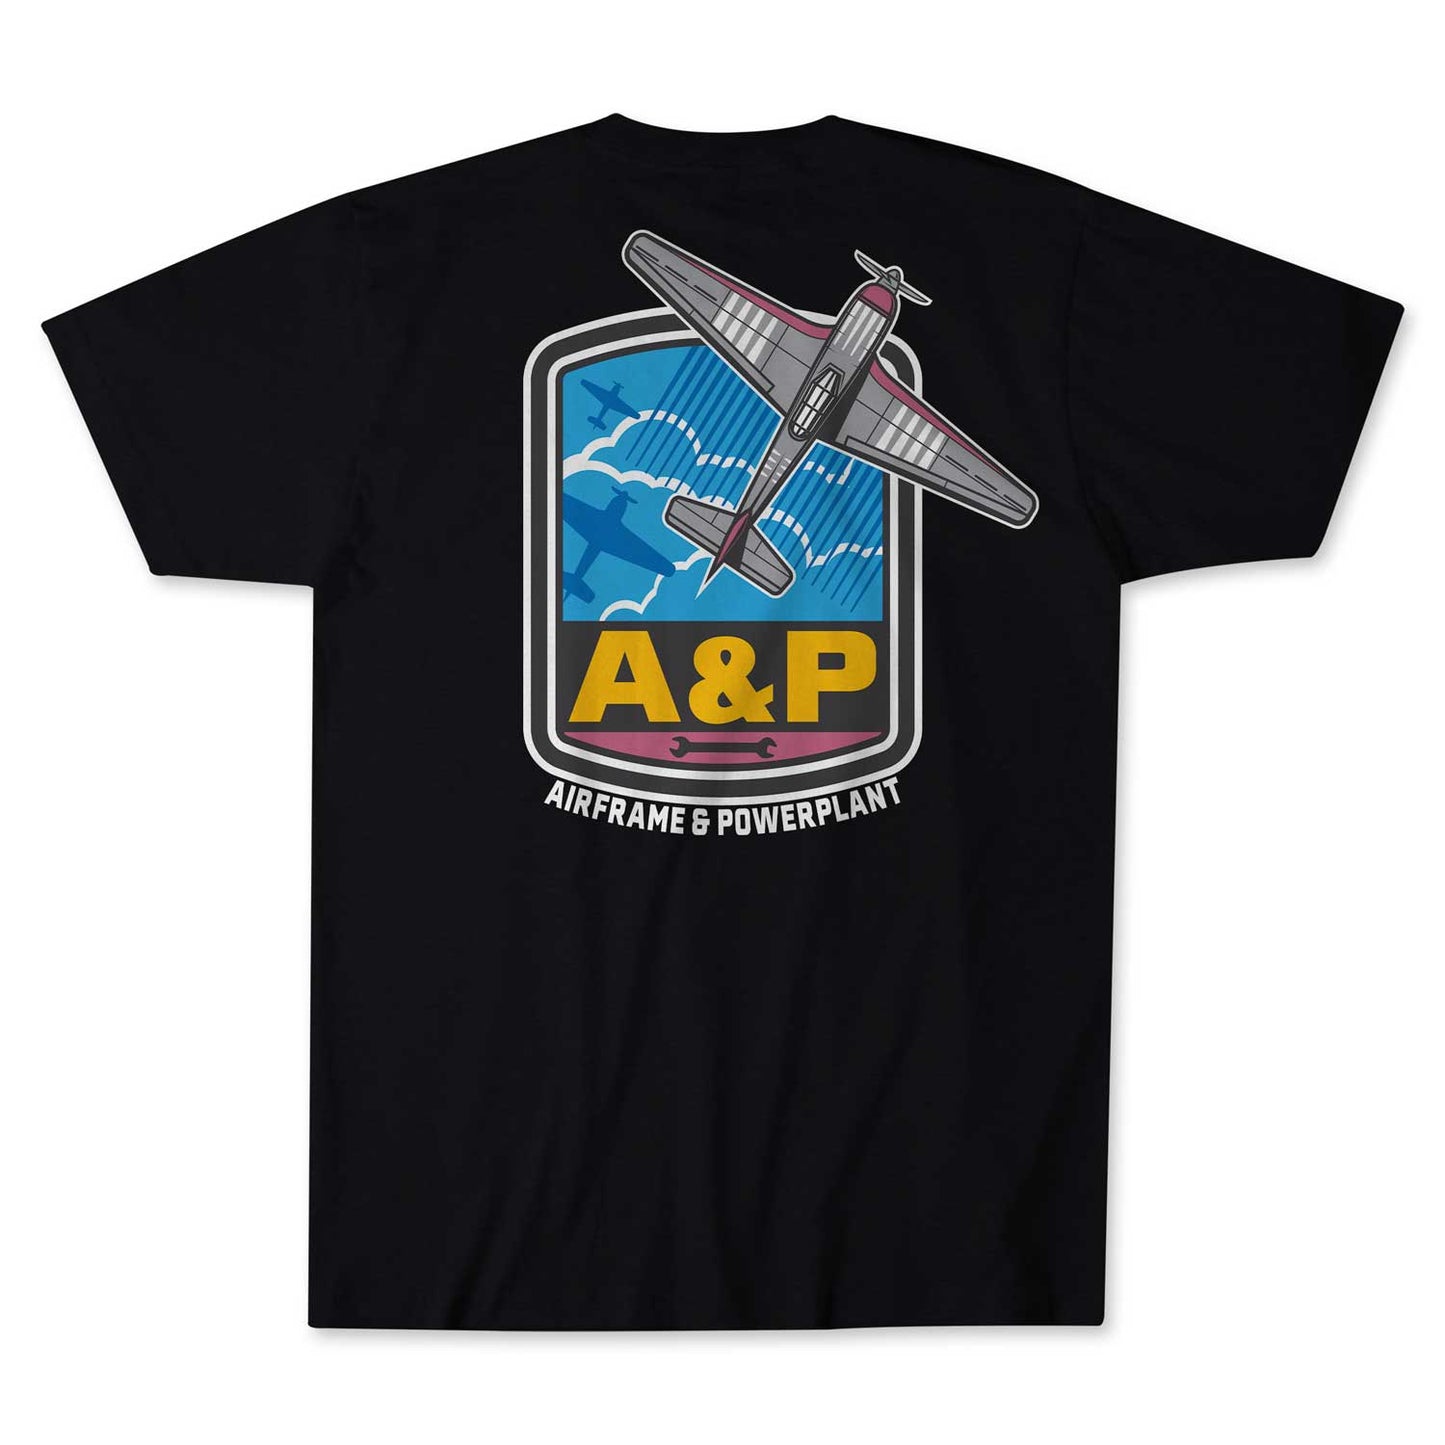 A&P Retro T-shirt